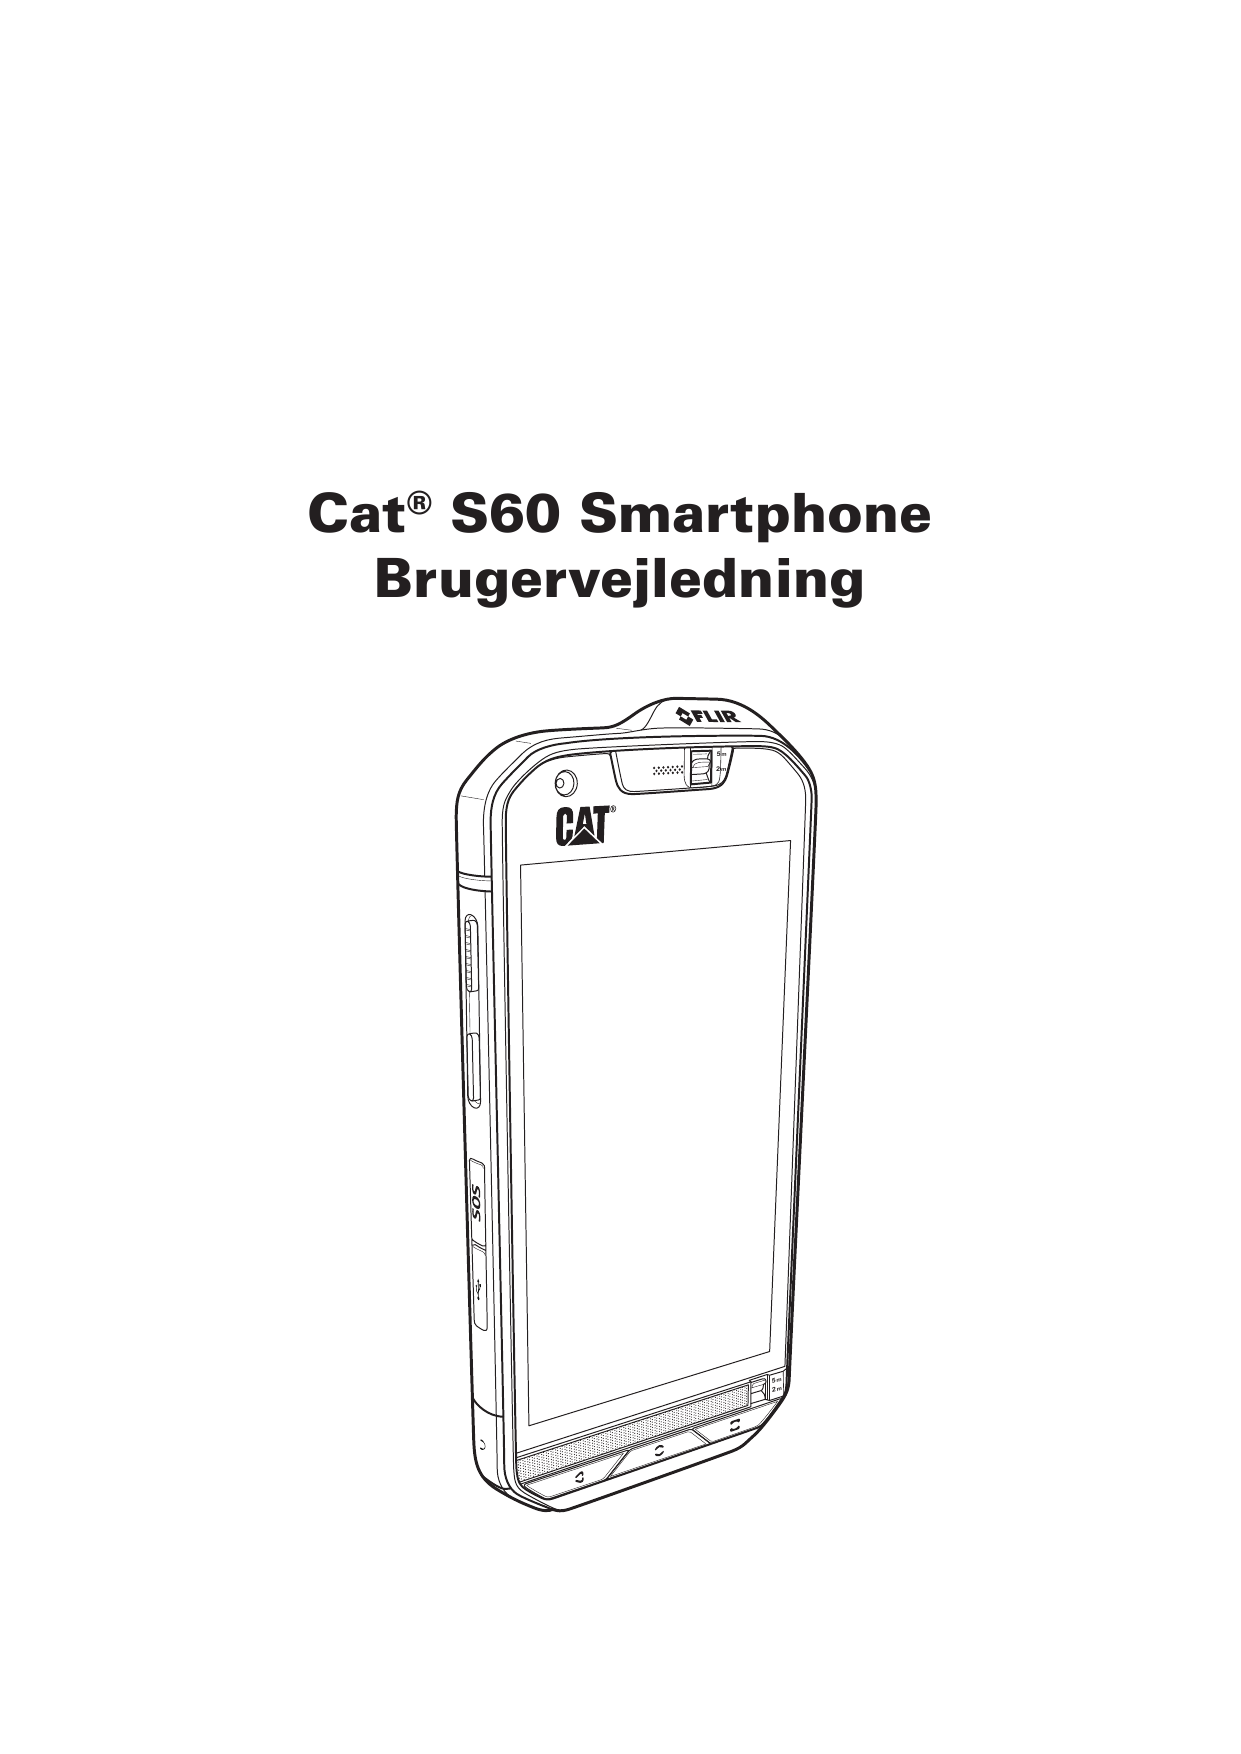 Cat® S60 SmartphoneBrugervejledning5m2m5m2m